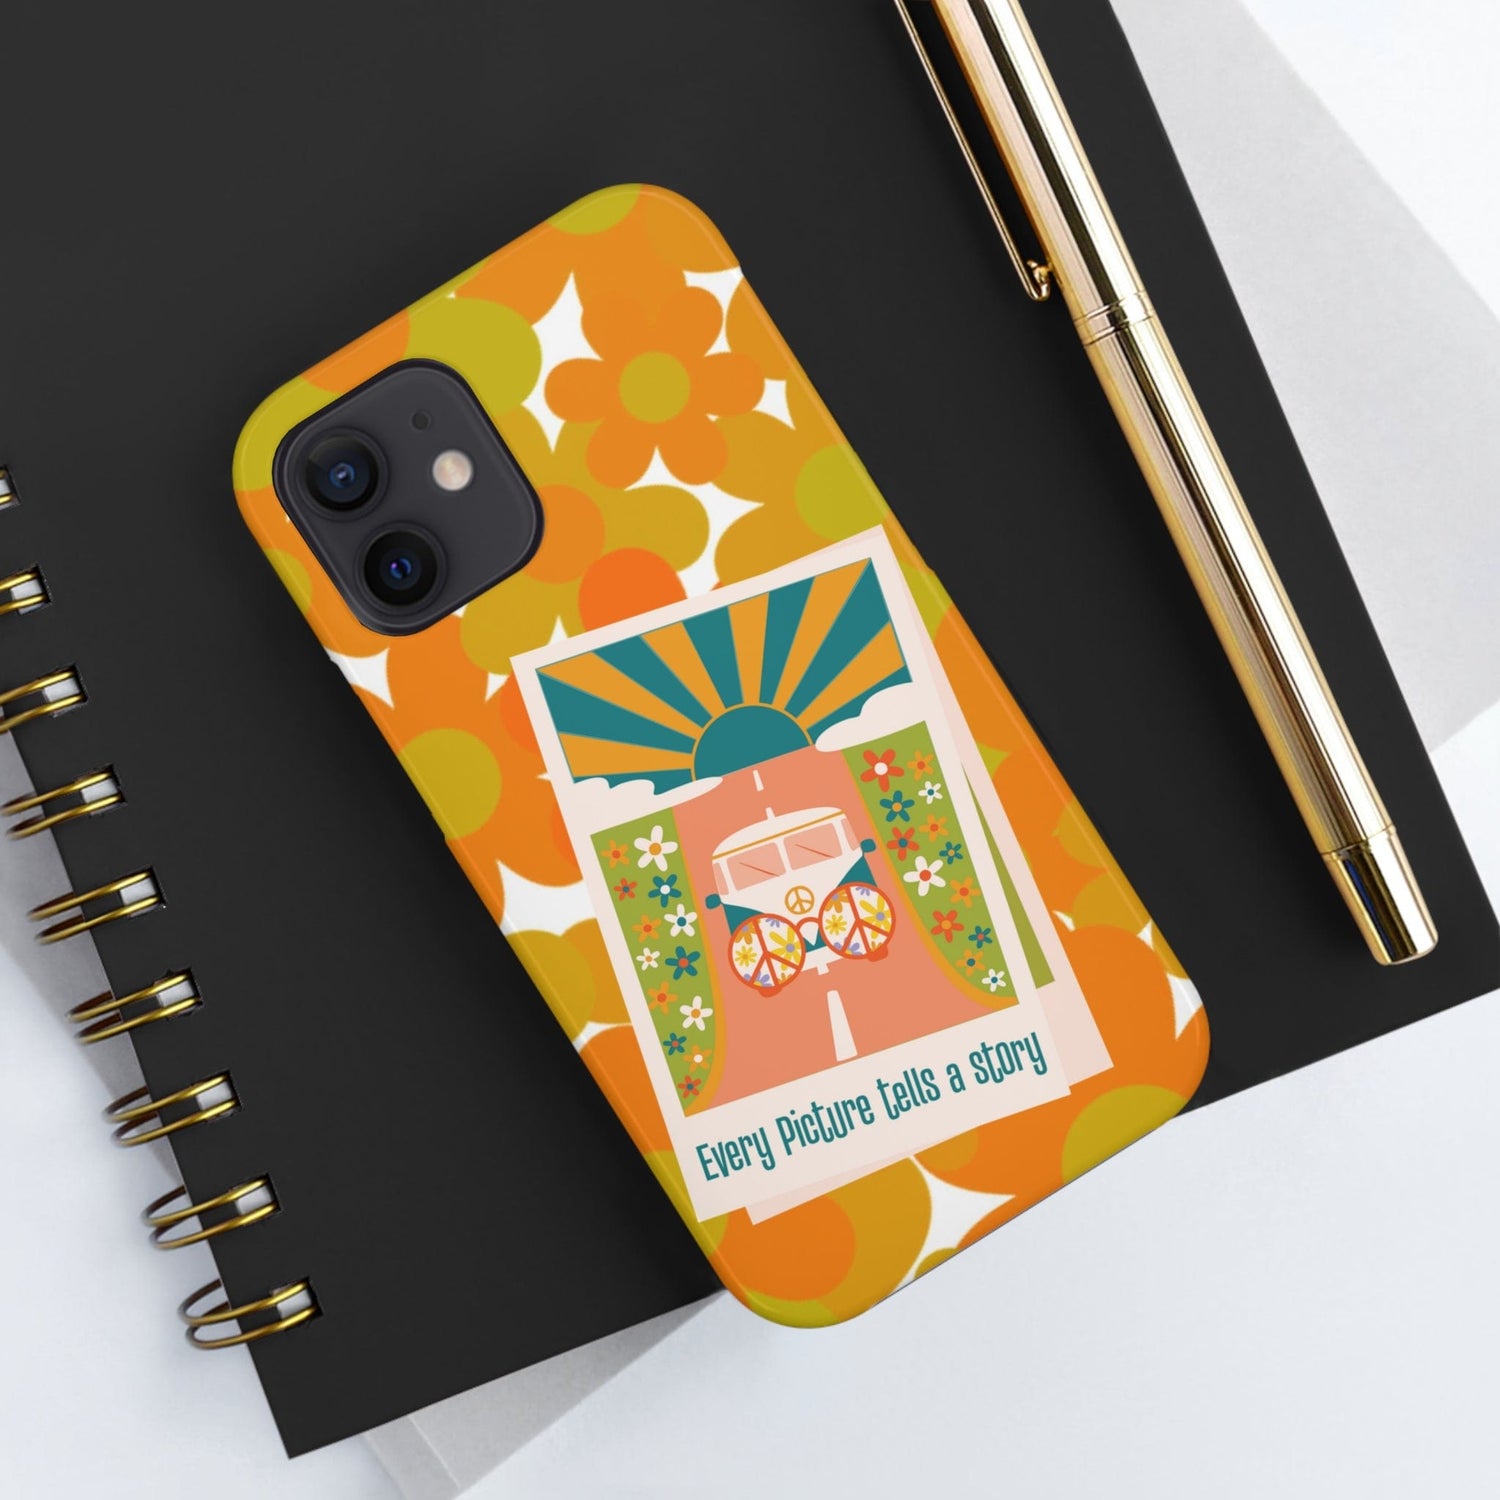 Retro Phone Case, Orange Flower Power, Polariod Picture, Mod Smart Phone Tough Phone Cases Phone Case iPhone 12 Mini